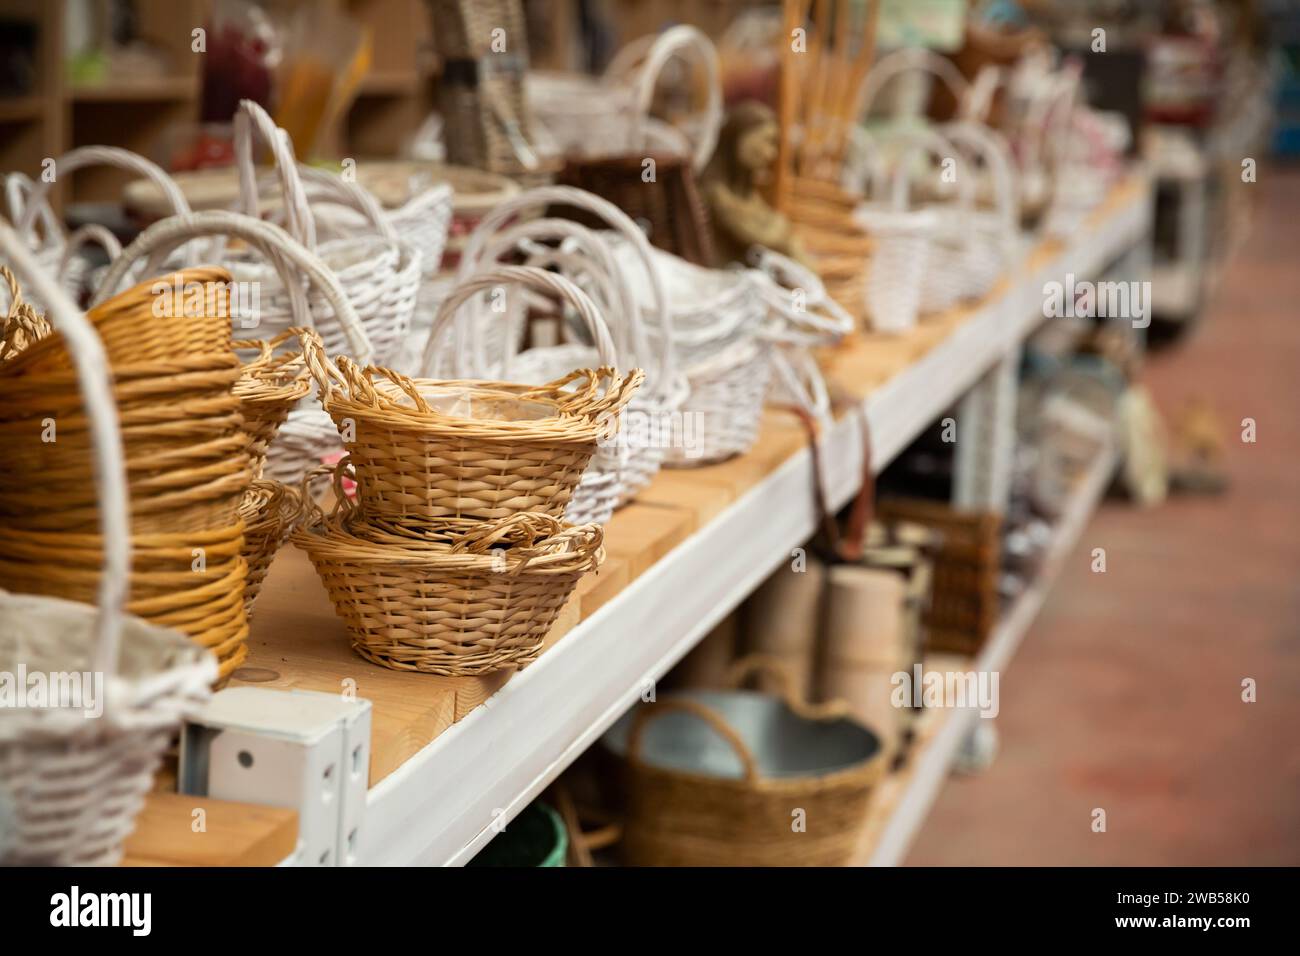 Design purpose basket in home decor shop Stock Photo